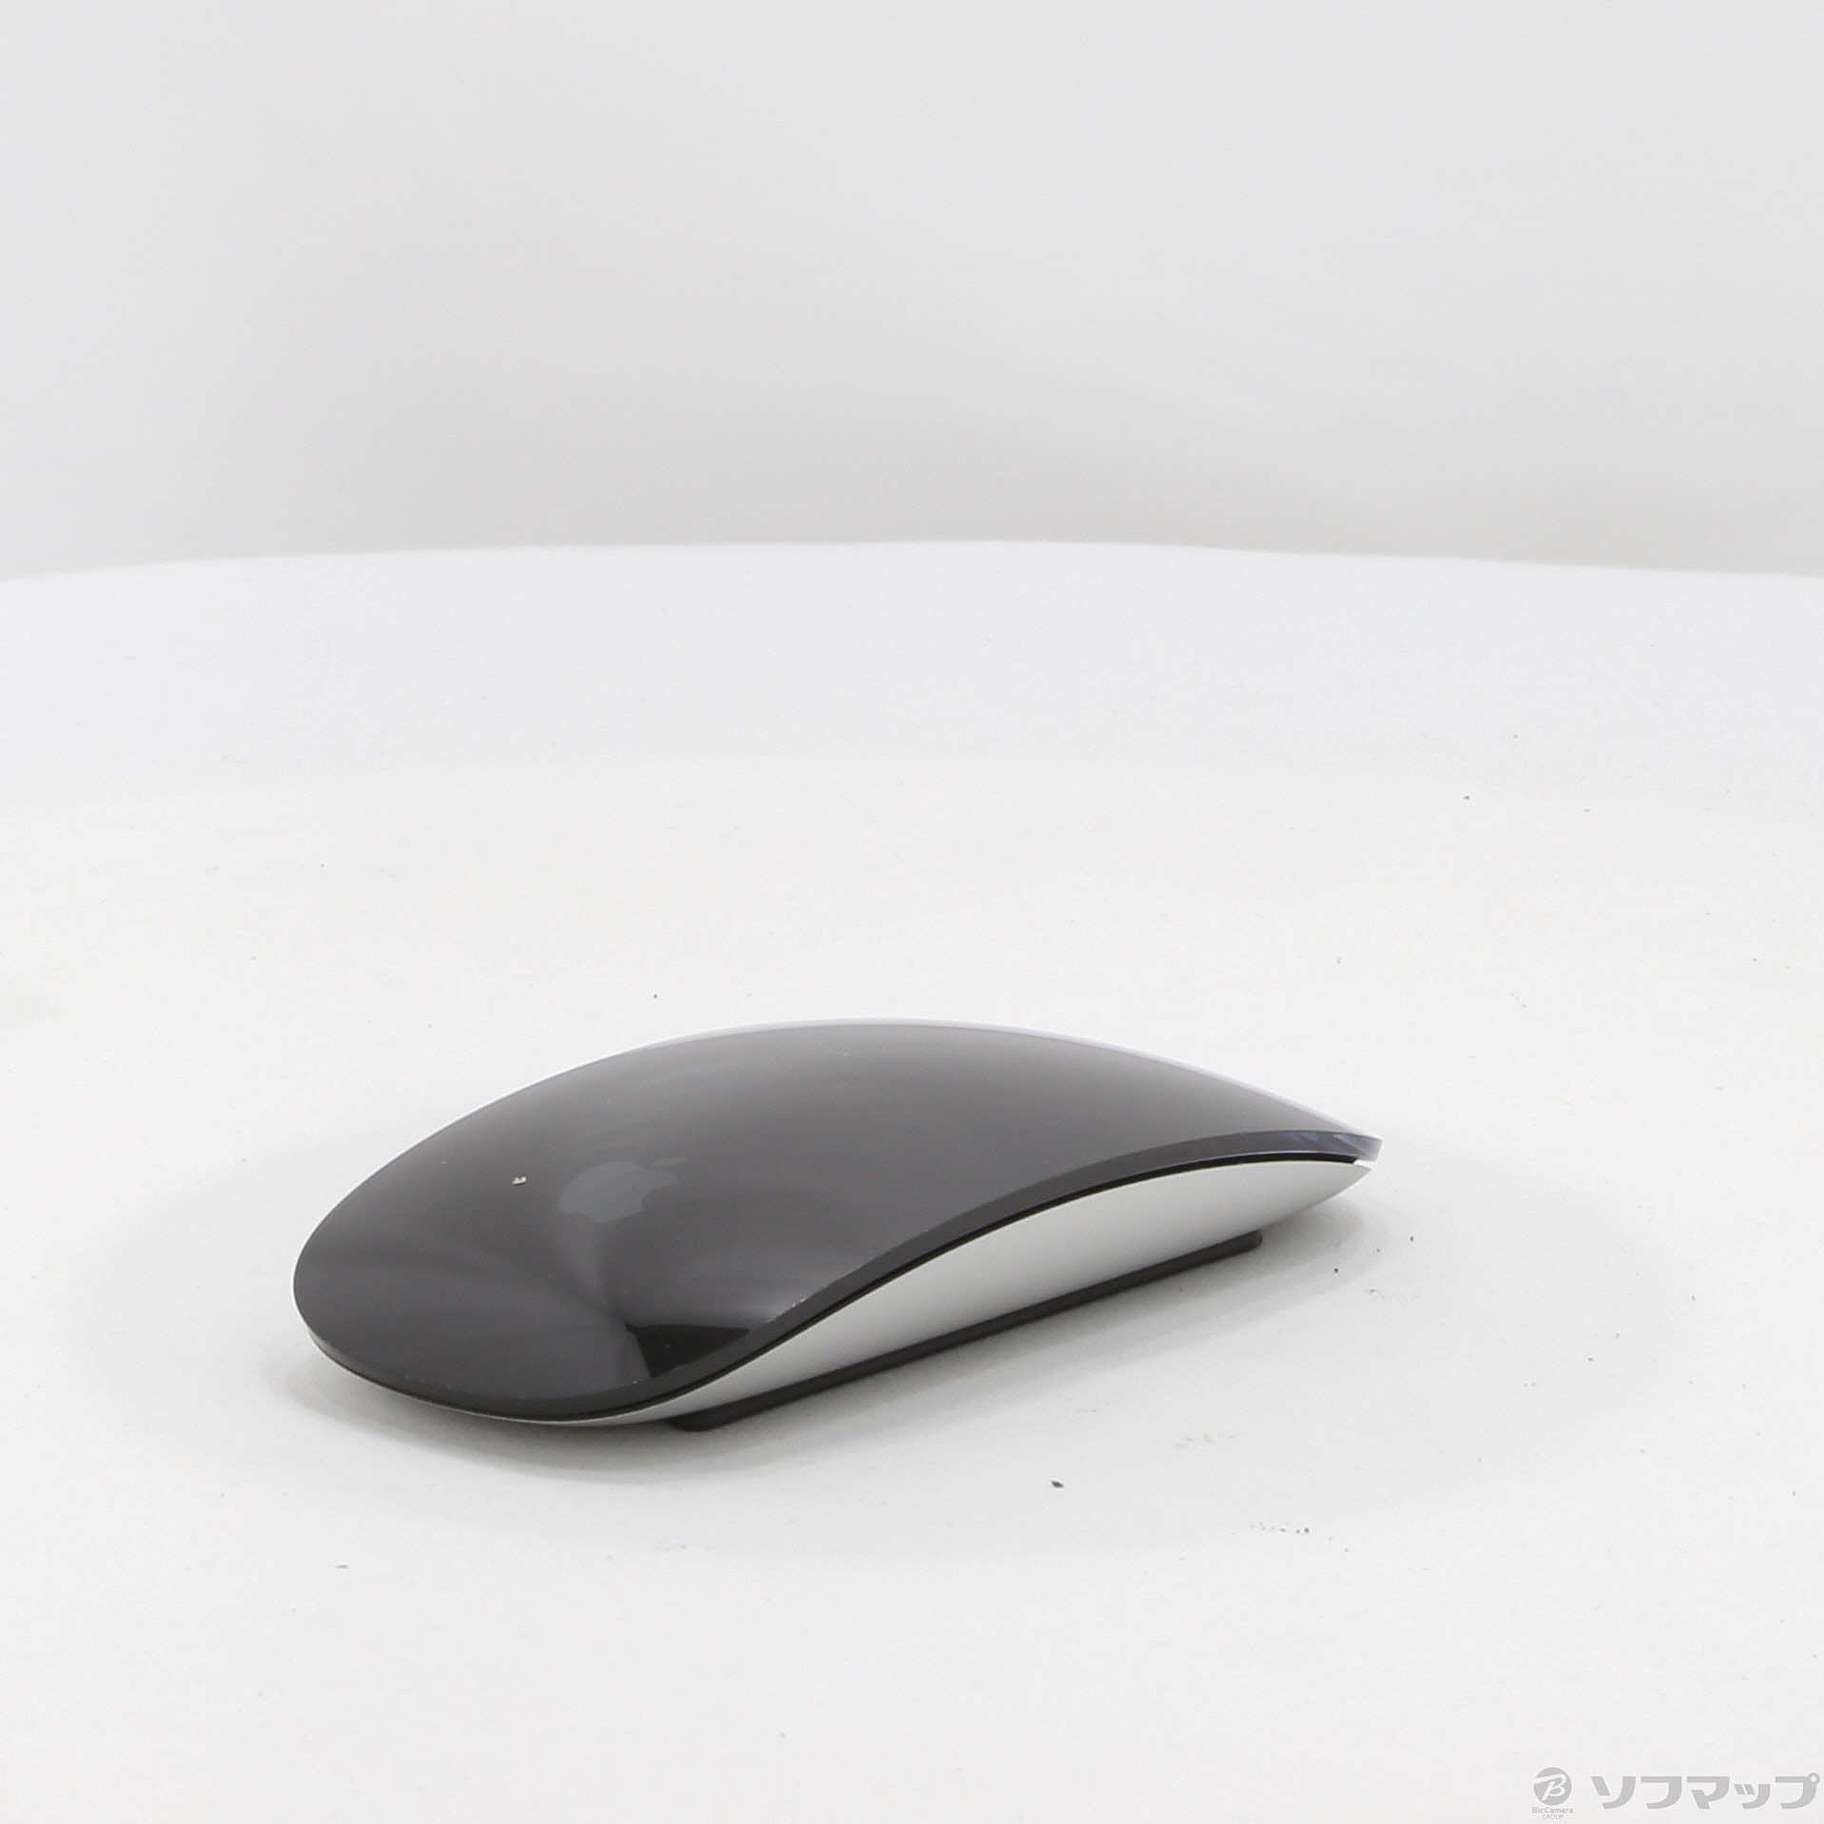 【送料込】Apple Magic Mouse 2 Space grey